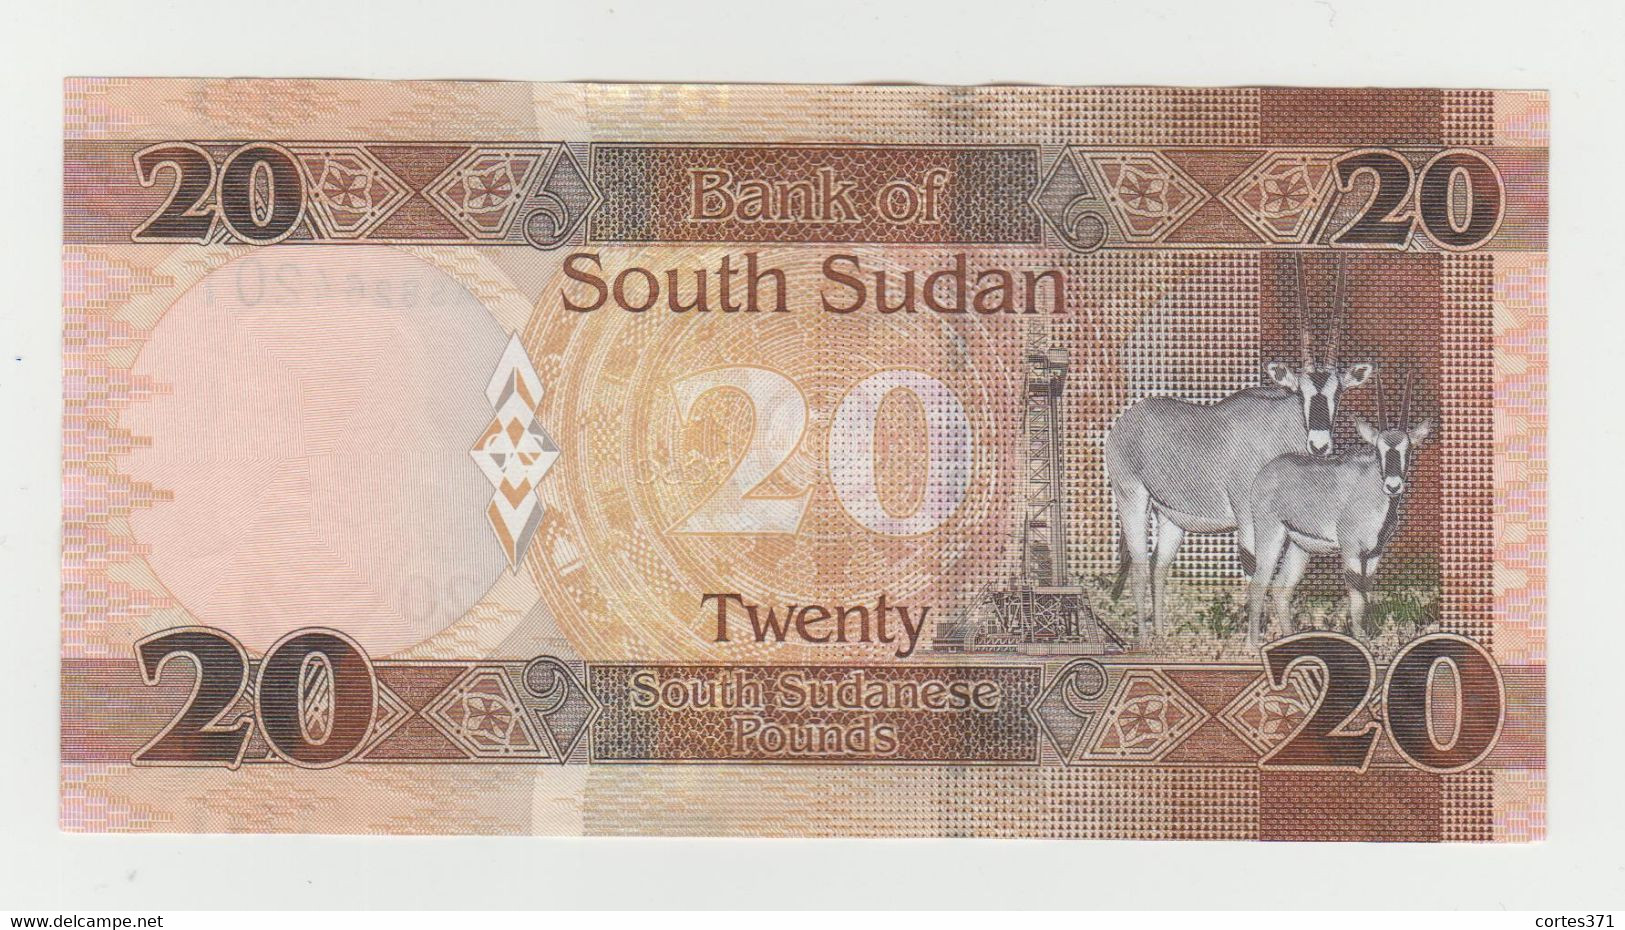 South Sudan 20 Pounds 2017 P-13c UNC - South Sudan